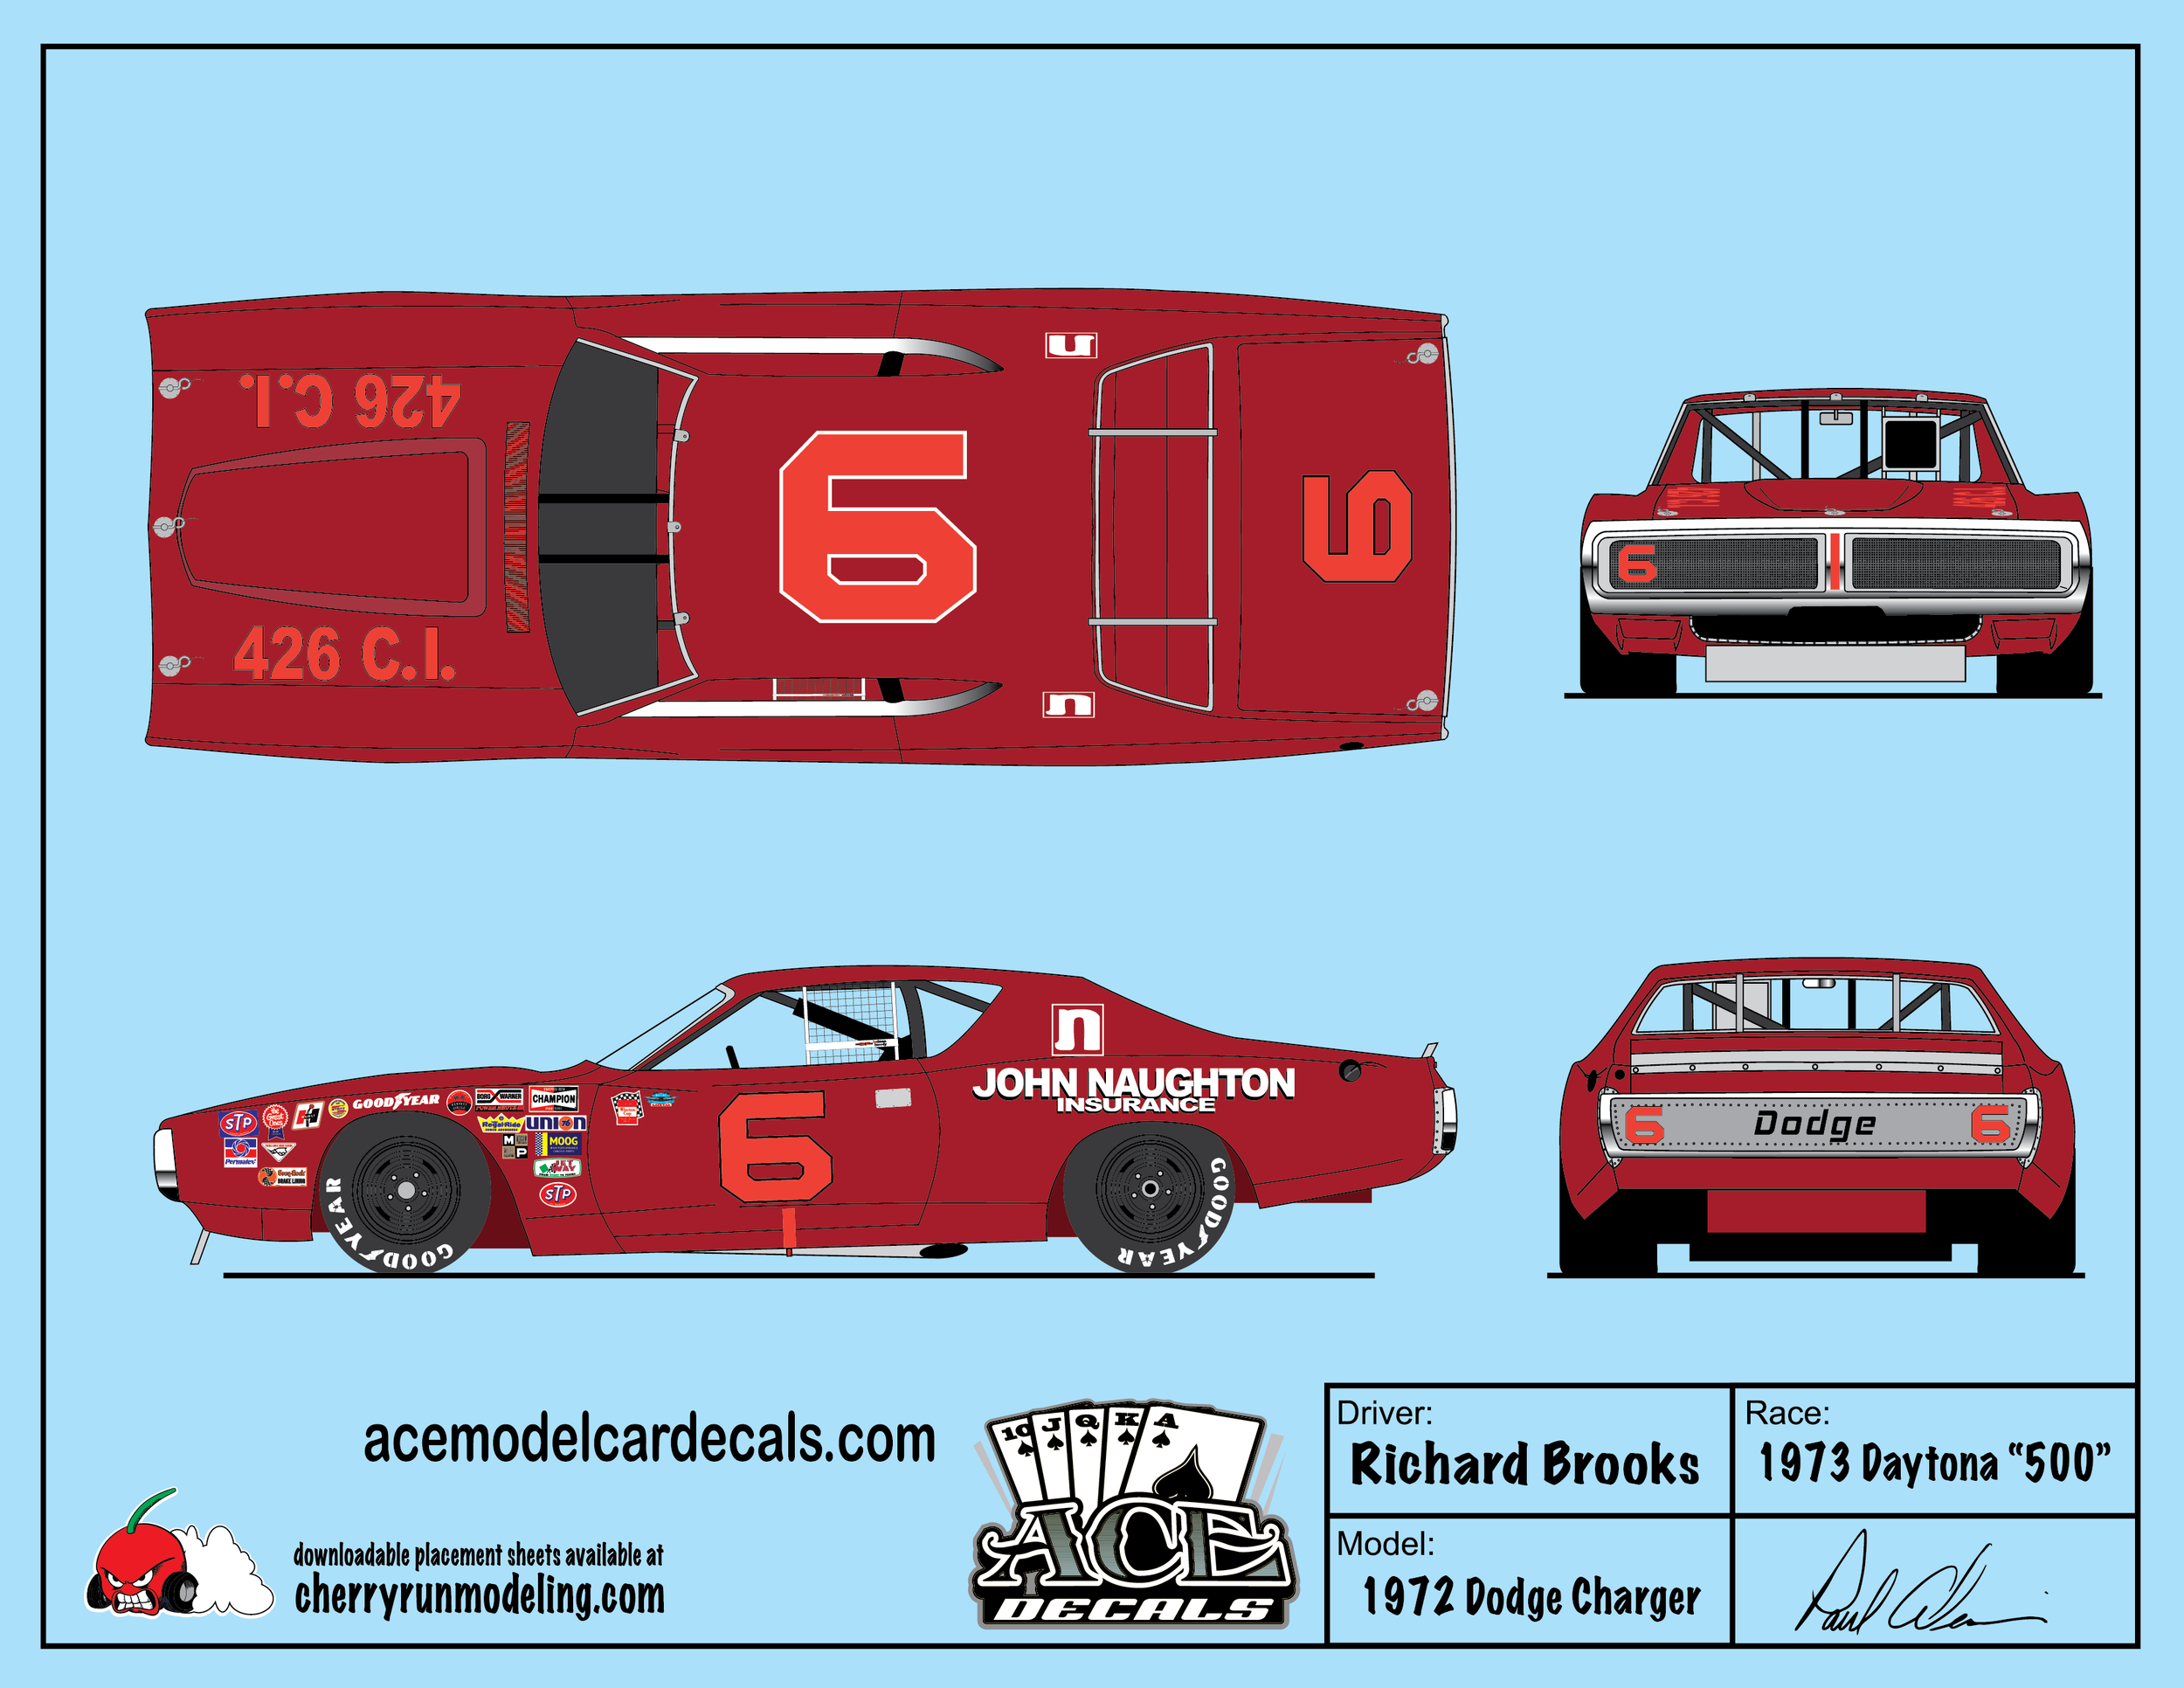 Richard Brooks 1973 Daytona 500-01.png